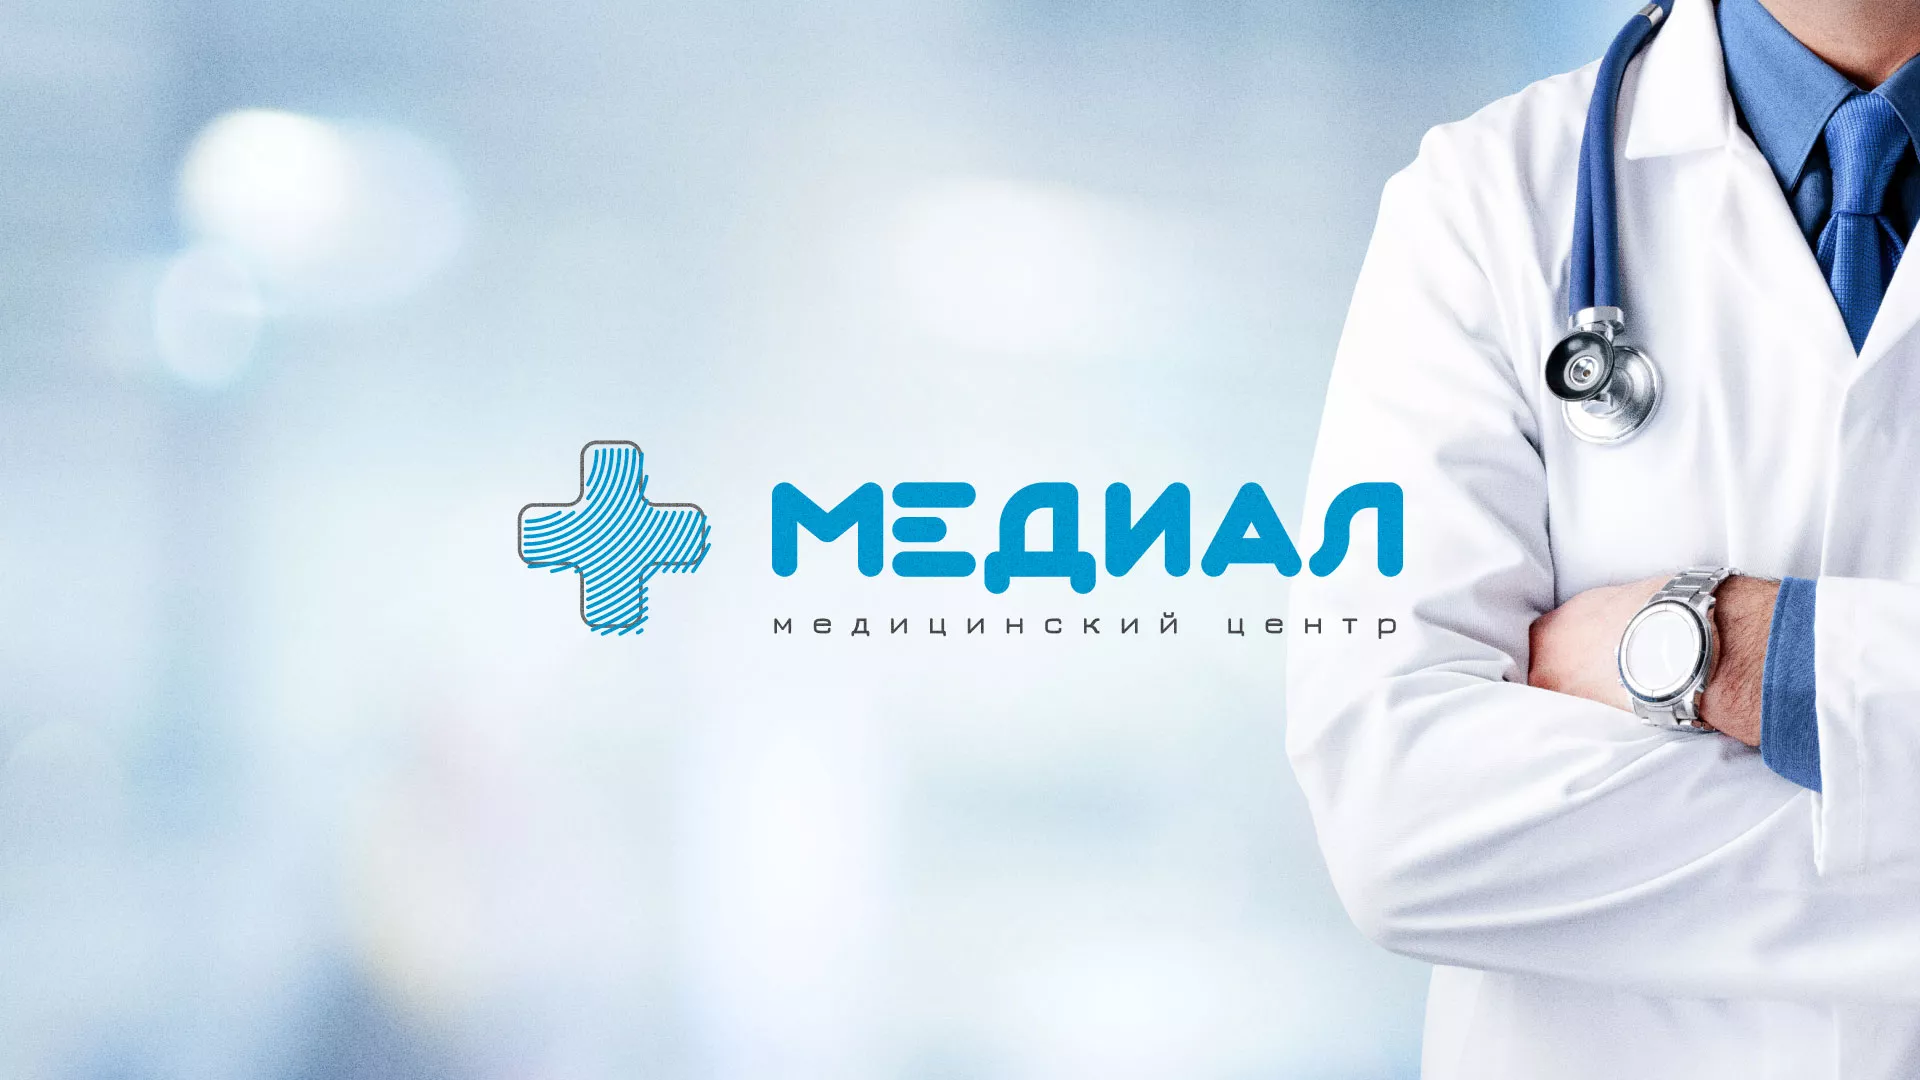 Создание сайта для медицинского центра «Медиал» в Ижевске